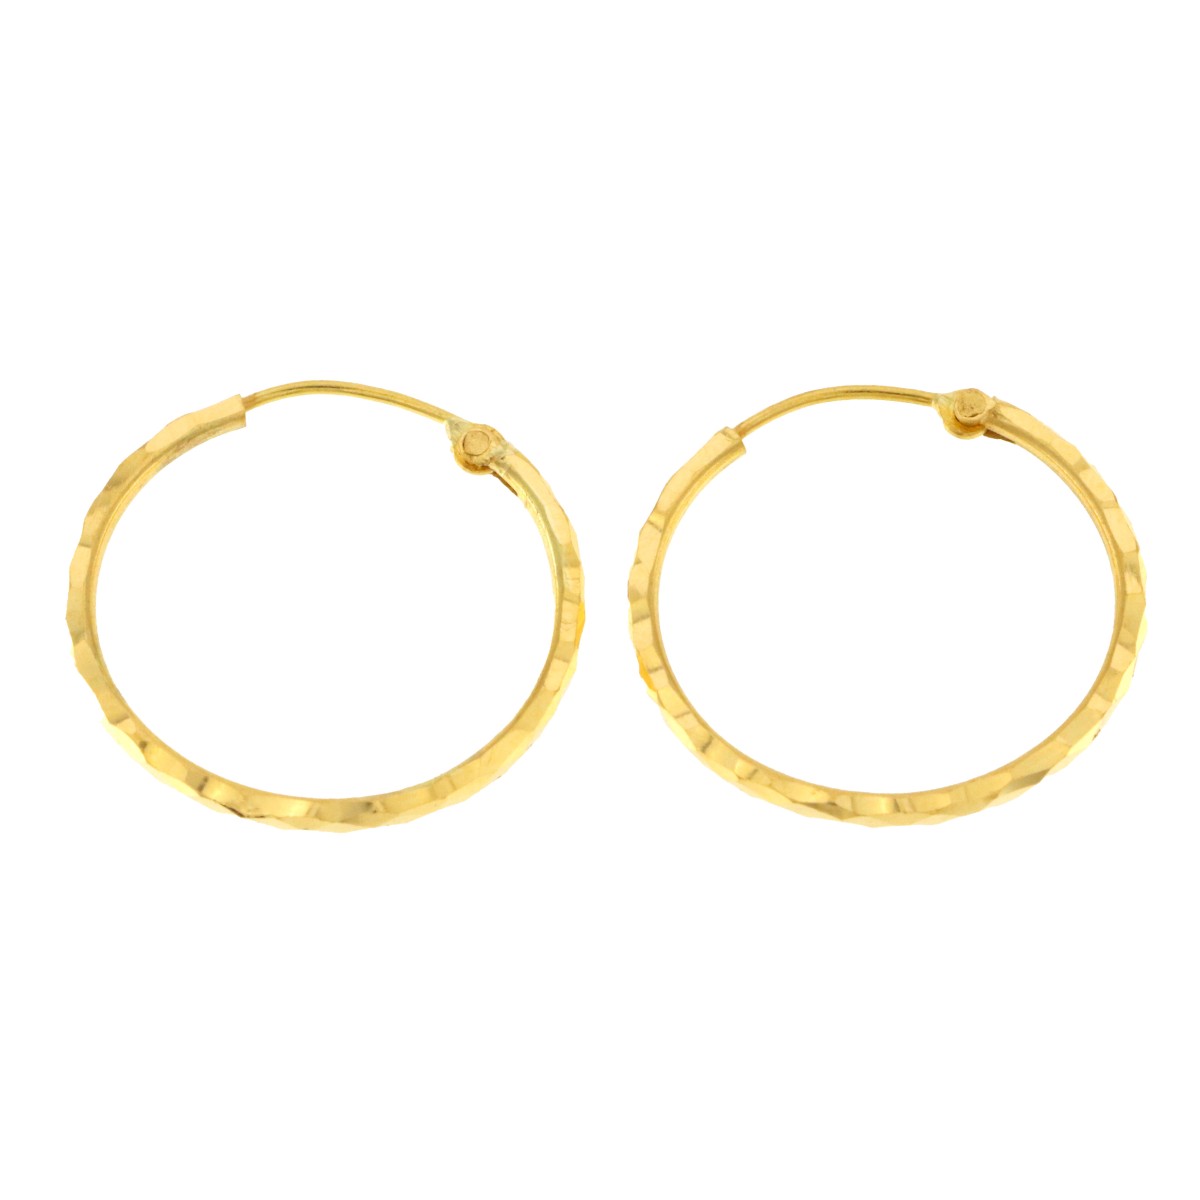 22ct Gold Small Hoop Earrings